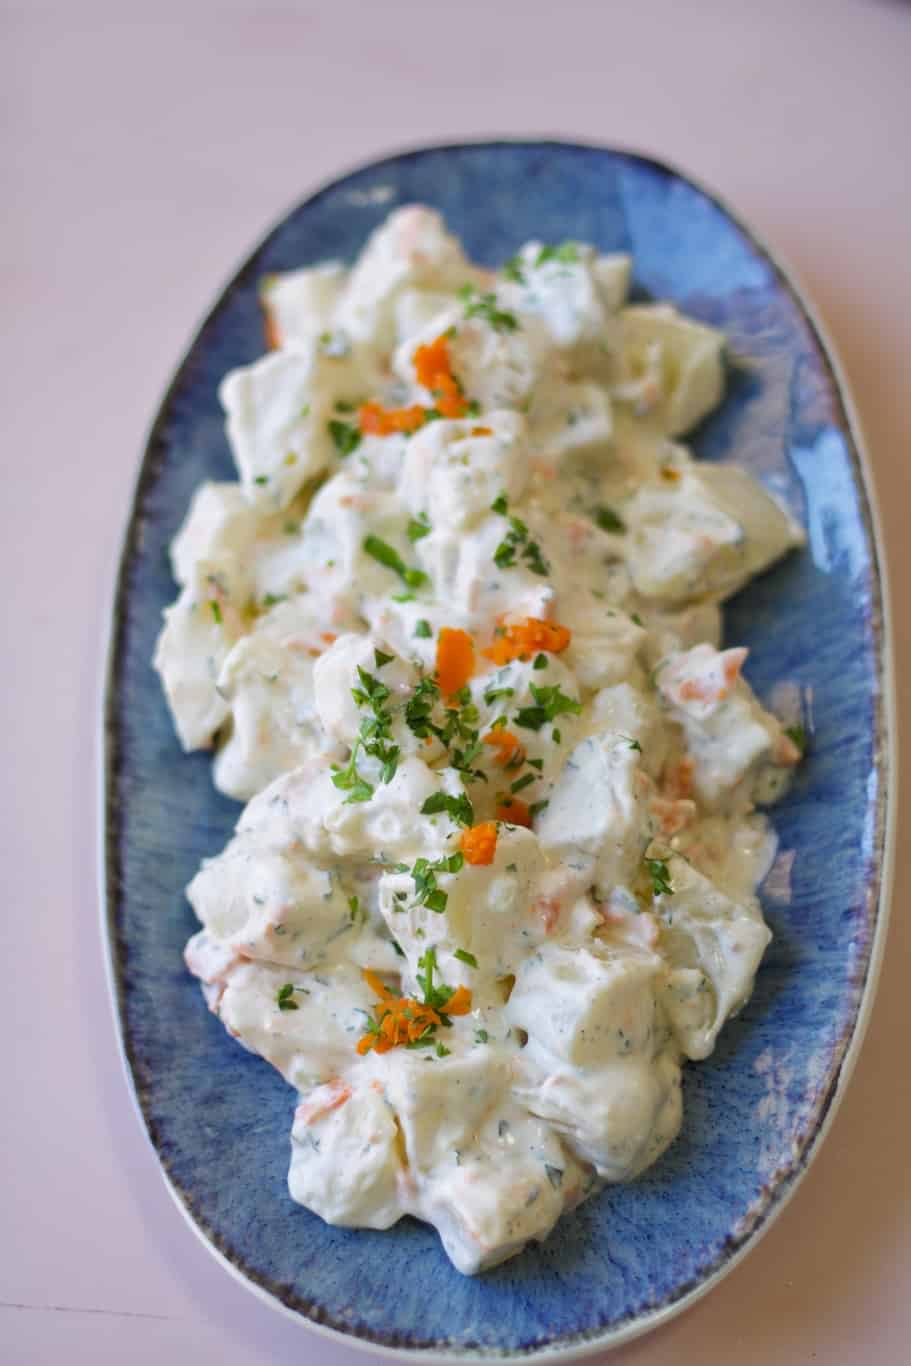 juan pollo potato salad recipe made up of potatoes, carrots, mayonnaise, and heavy cream 